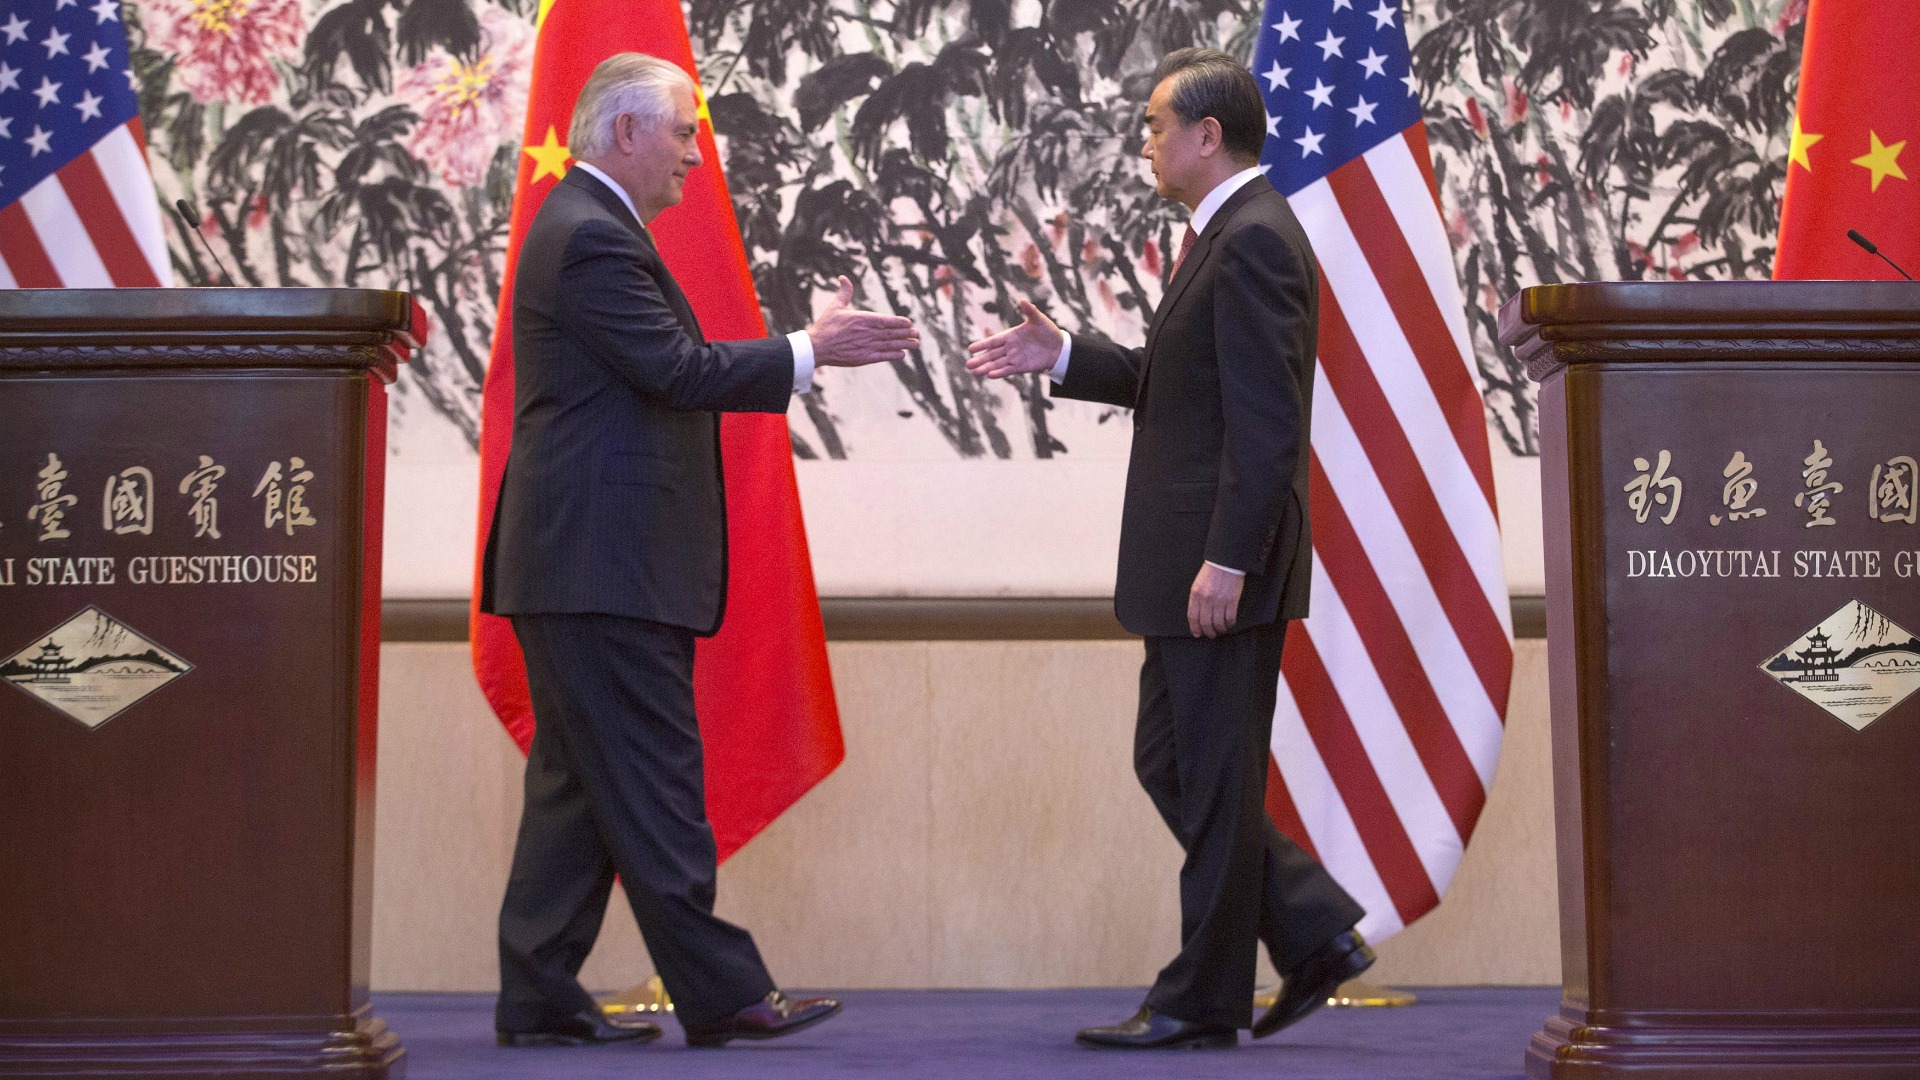 EEUU y China acuerdan cooperar para evitar un conflicto en la península de Corea